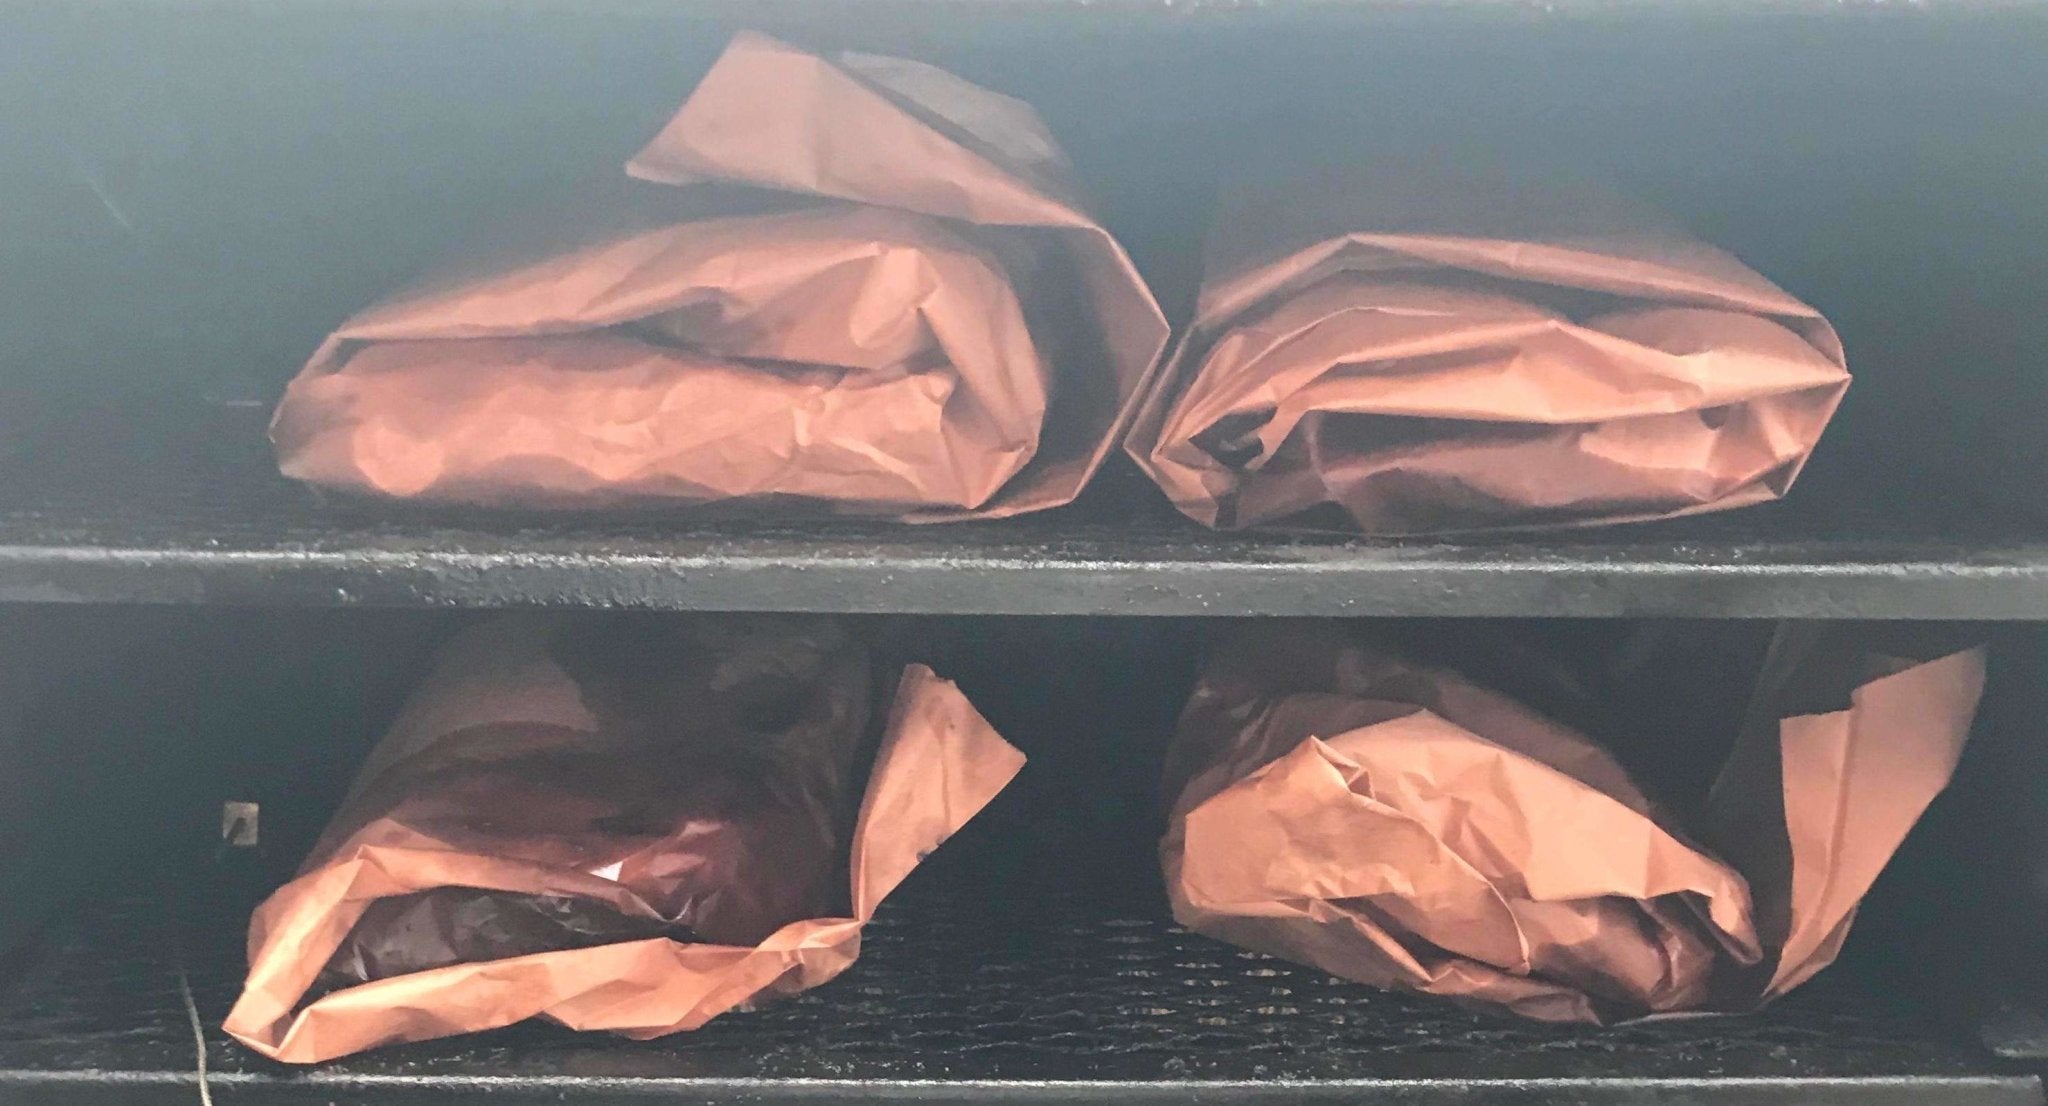 Pink Butcher Paper - Smoking Wrap - 24 x 150